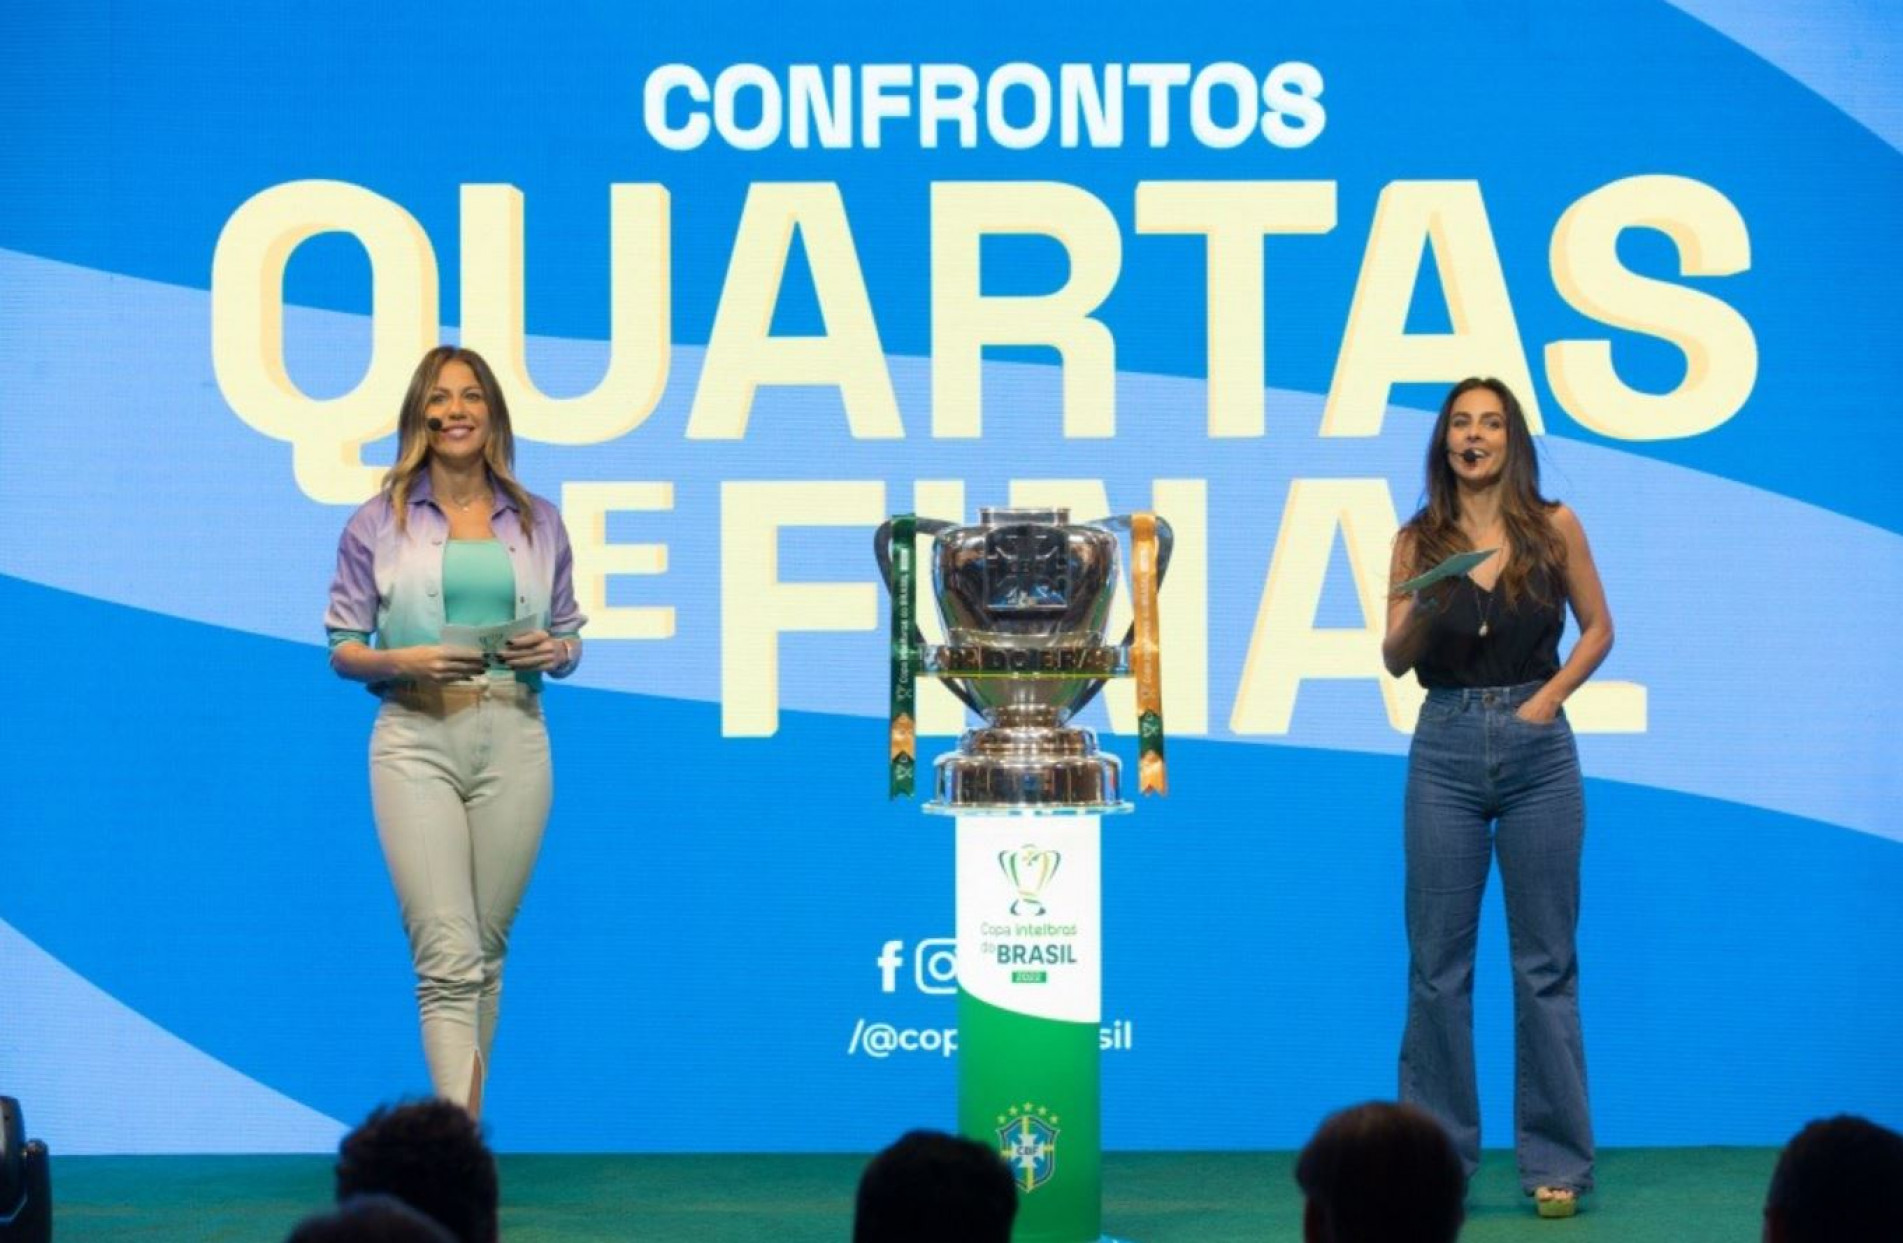 Sorteio define jogos das quartas de final da Copa do Brasil - Metropolitan  News USA